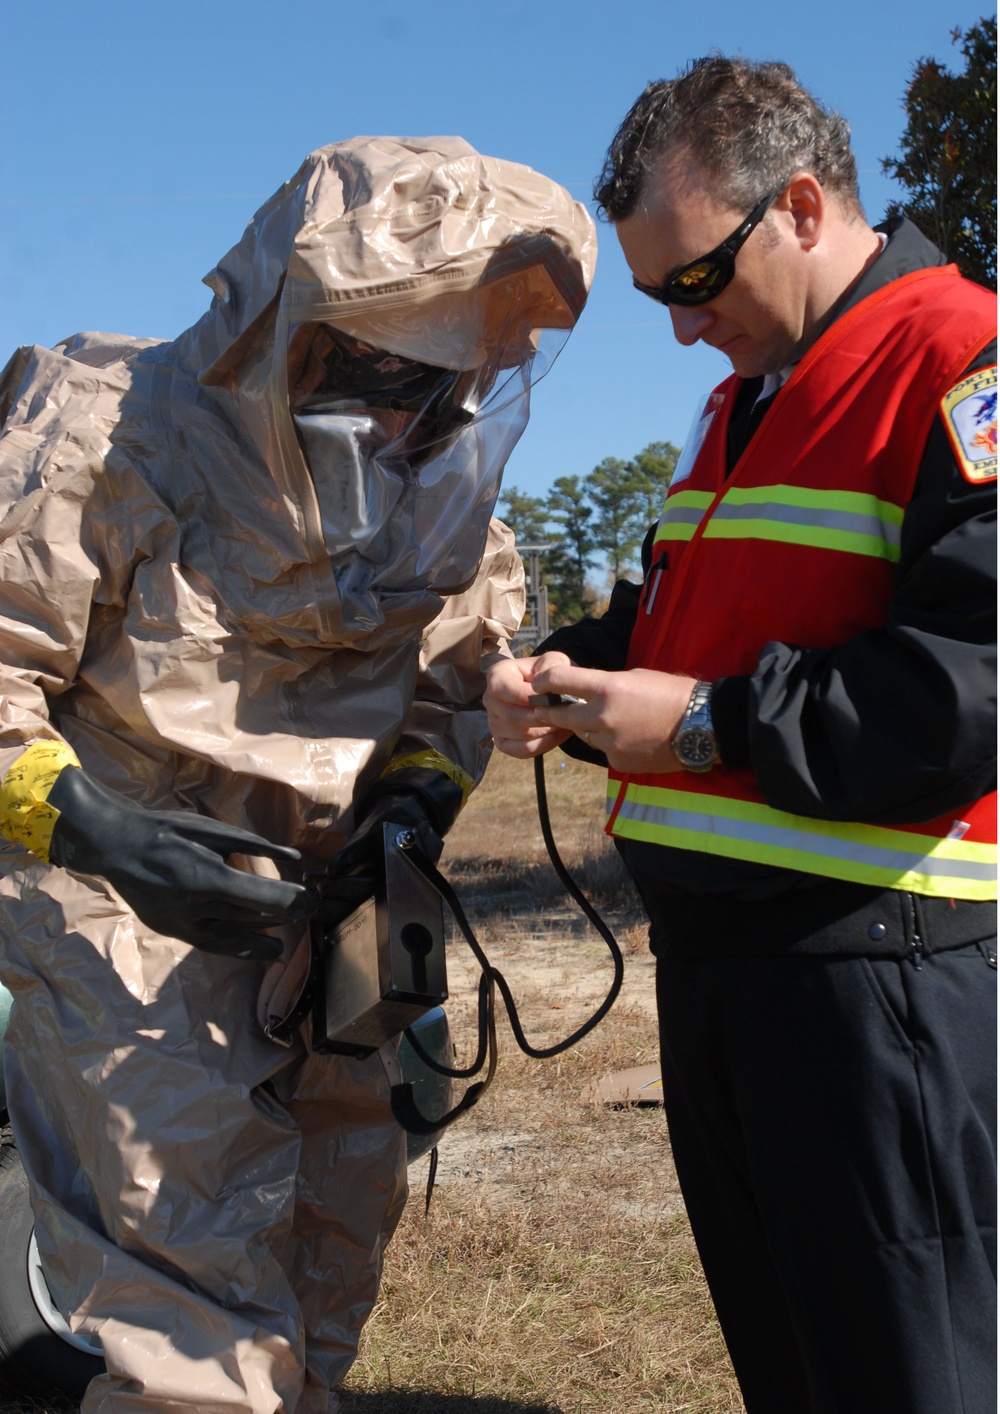 DVIDS - News - Caution! Hazardous training: EOD, HAZMAT suit up to save ...